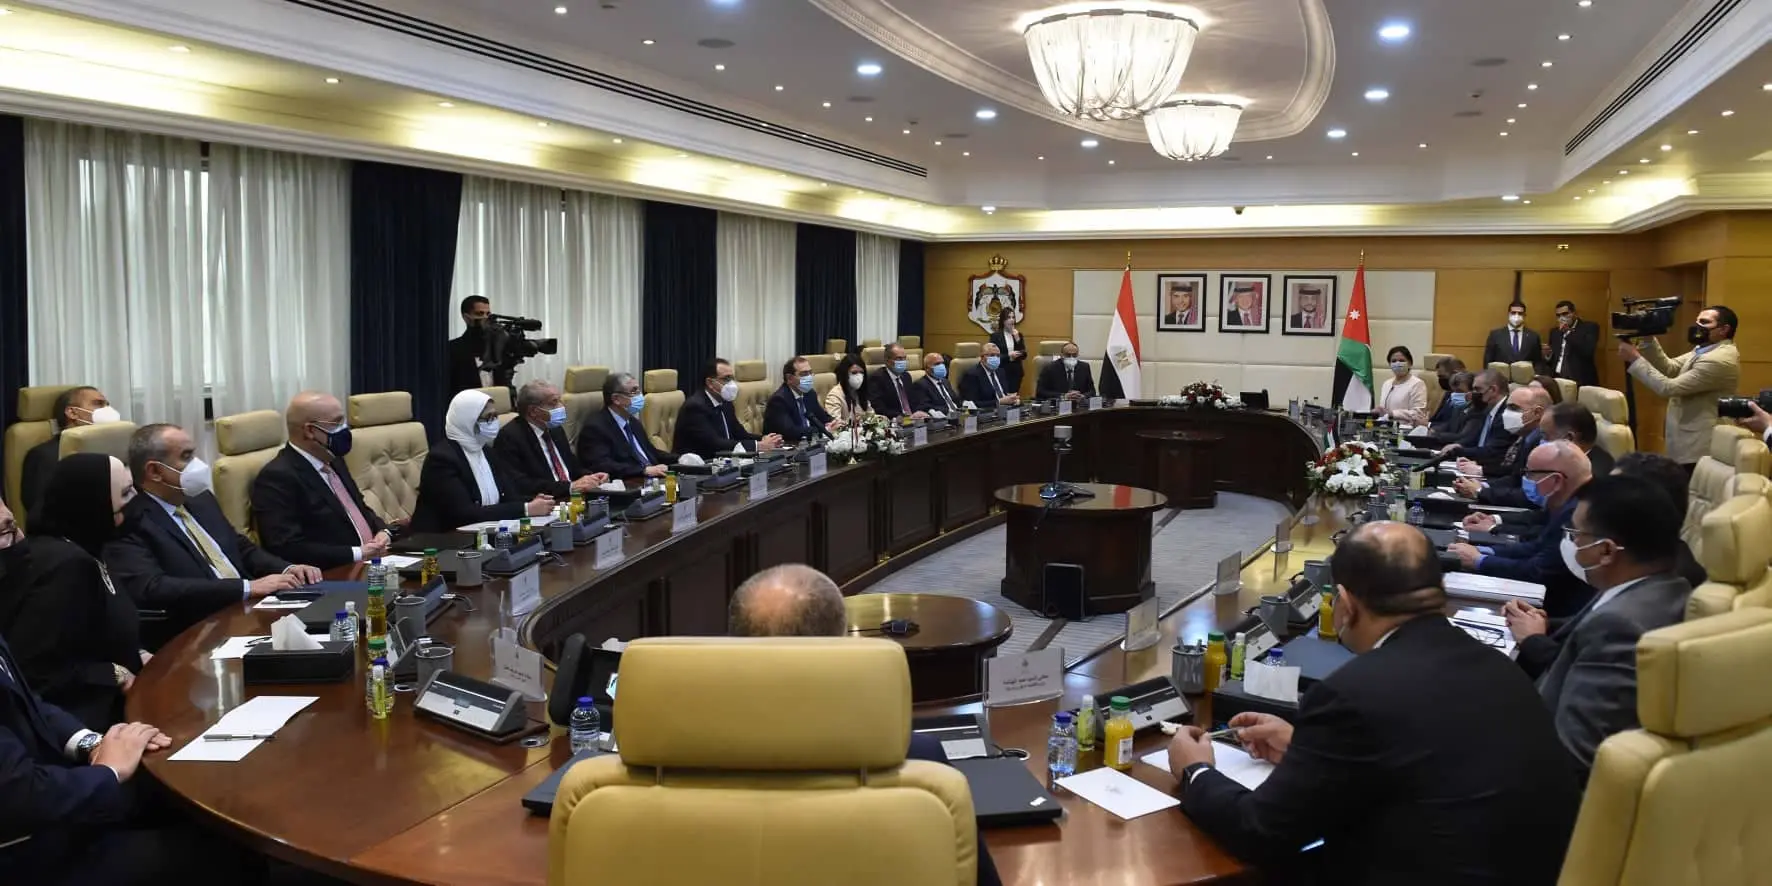 رئيسا وزراء مصر والأردن يترأسان الدورة الـ 29 للجنة العليا المصرية الأردنية المشتركة